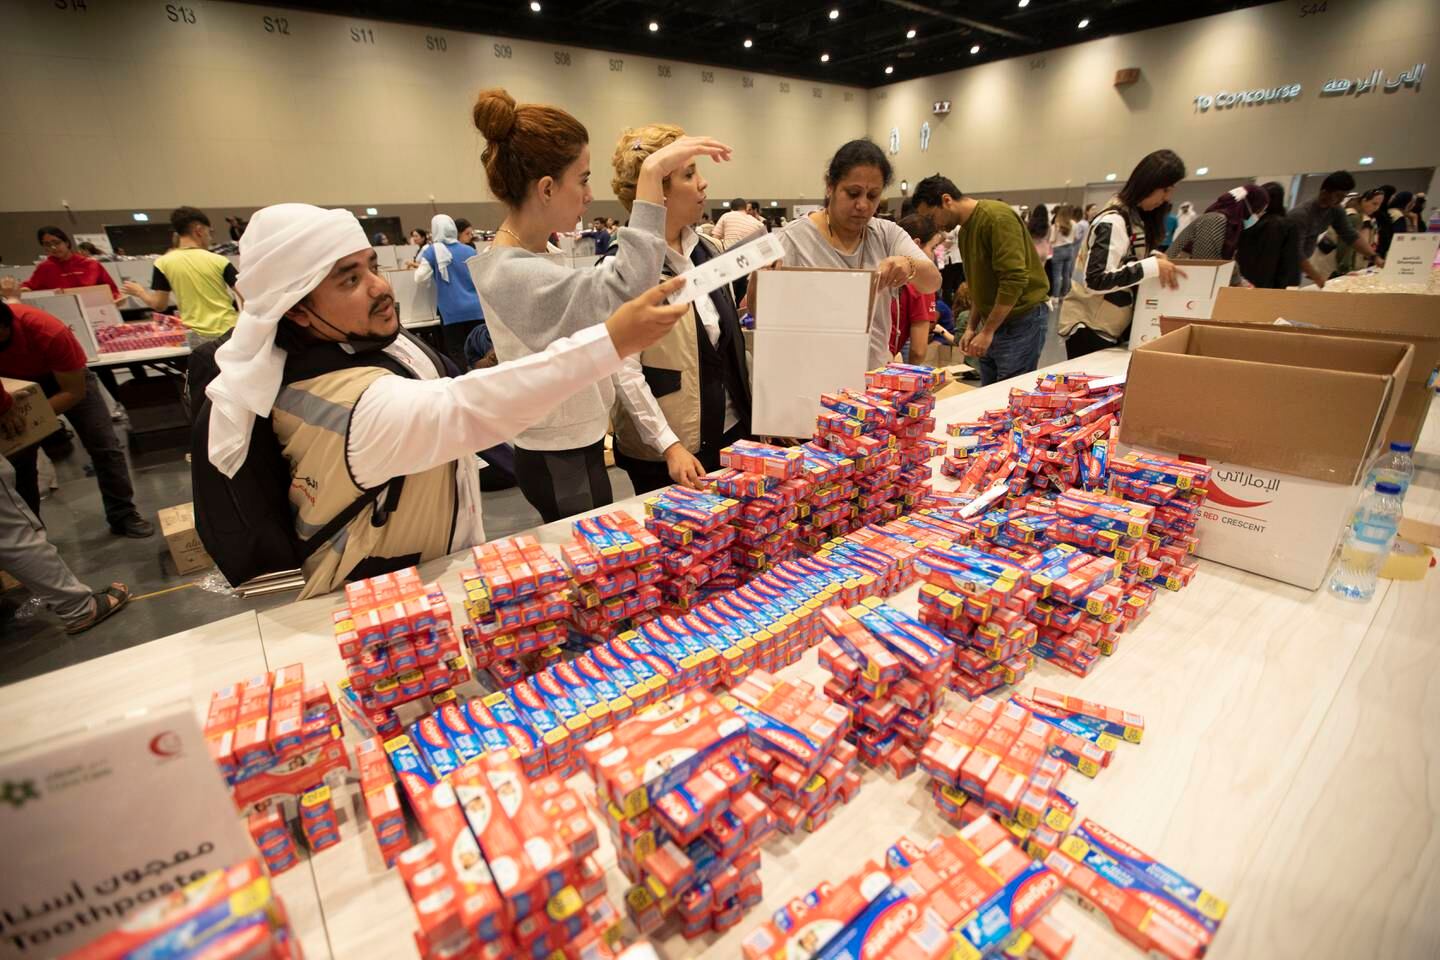 Des volontaires emballent l'essentiel lors de l'événement Bridges of Goodness à Expo City, Dubaï.  Leslie Pableo pour The National